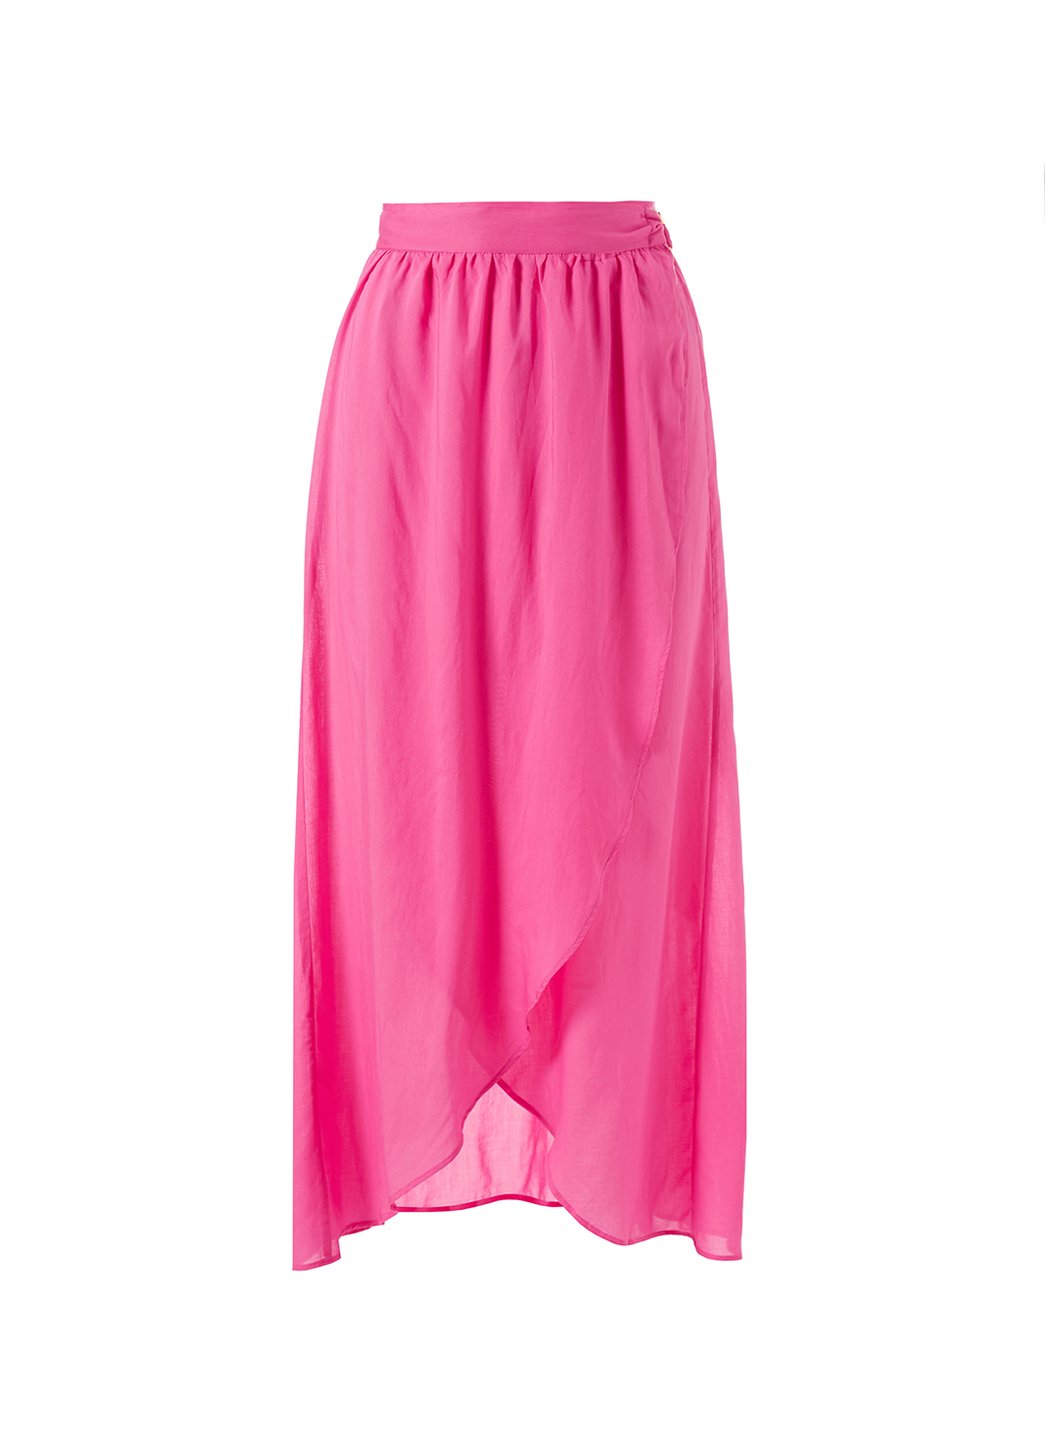 devlin hot pink wrap skirt